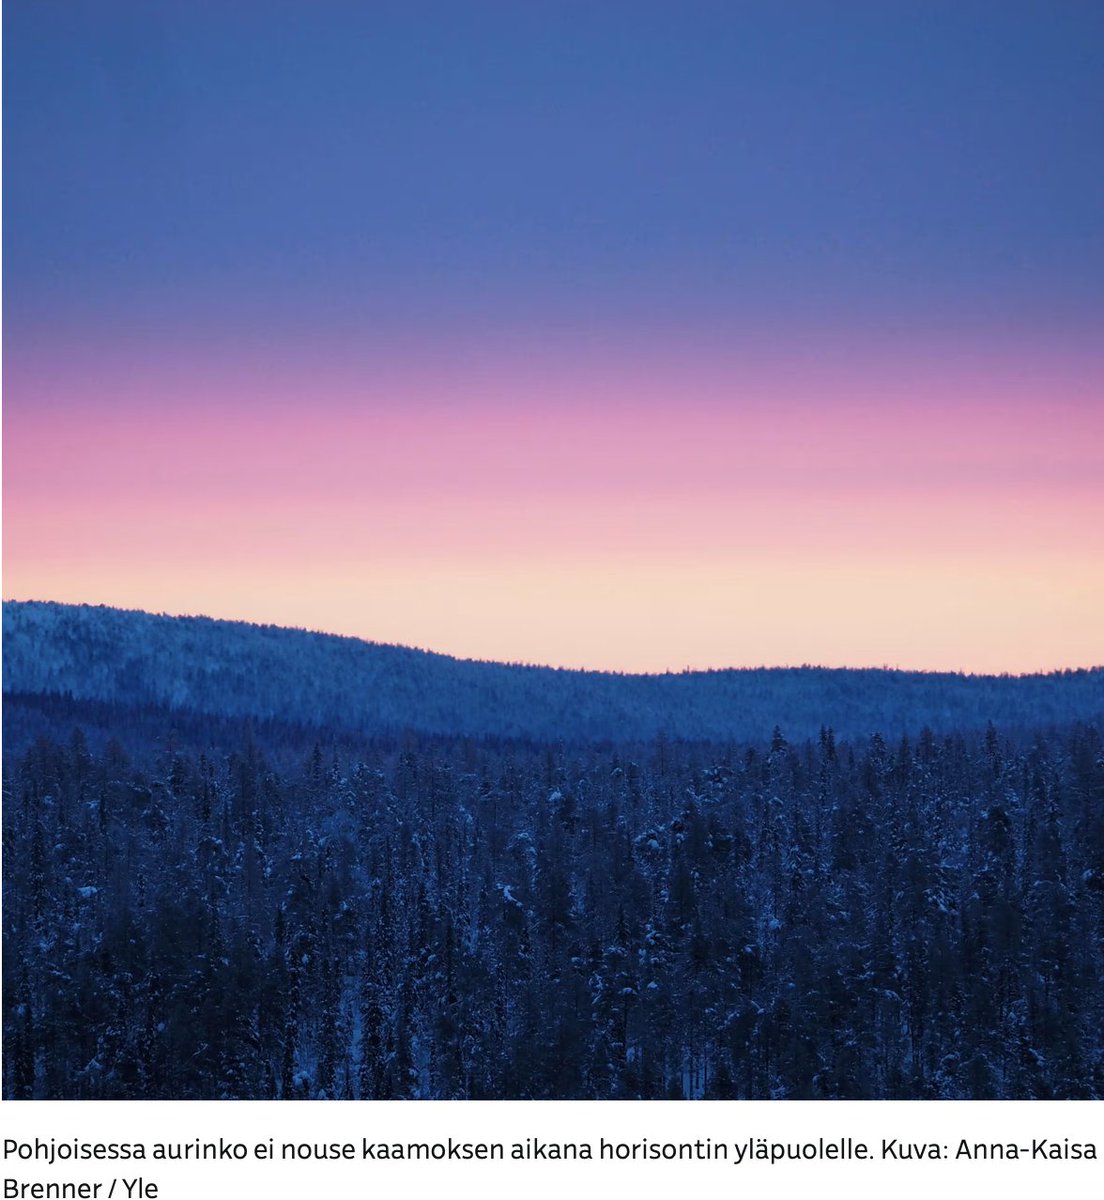 Kuzey'de Kaamos günleri başladı.

Dünyanın konumu nedeniyle gündüzleri güneşin doğmadığı günler Finlandiya'nın kuzeyinde Utsjoki'de başladı.

Güneş Ocak ayına kadar görünmeyecek. 

#Finland